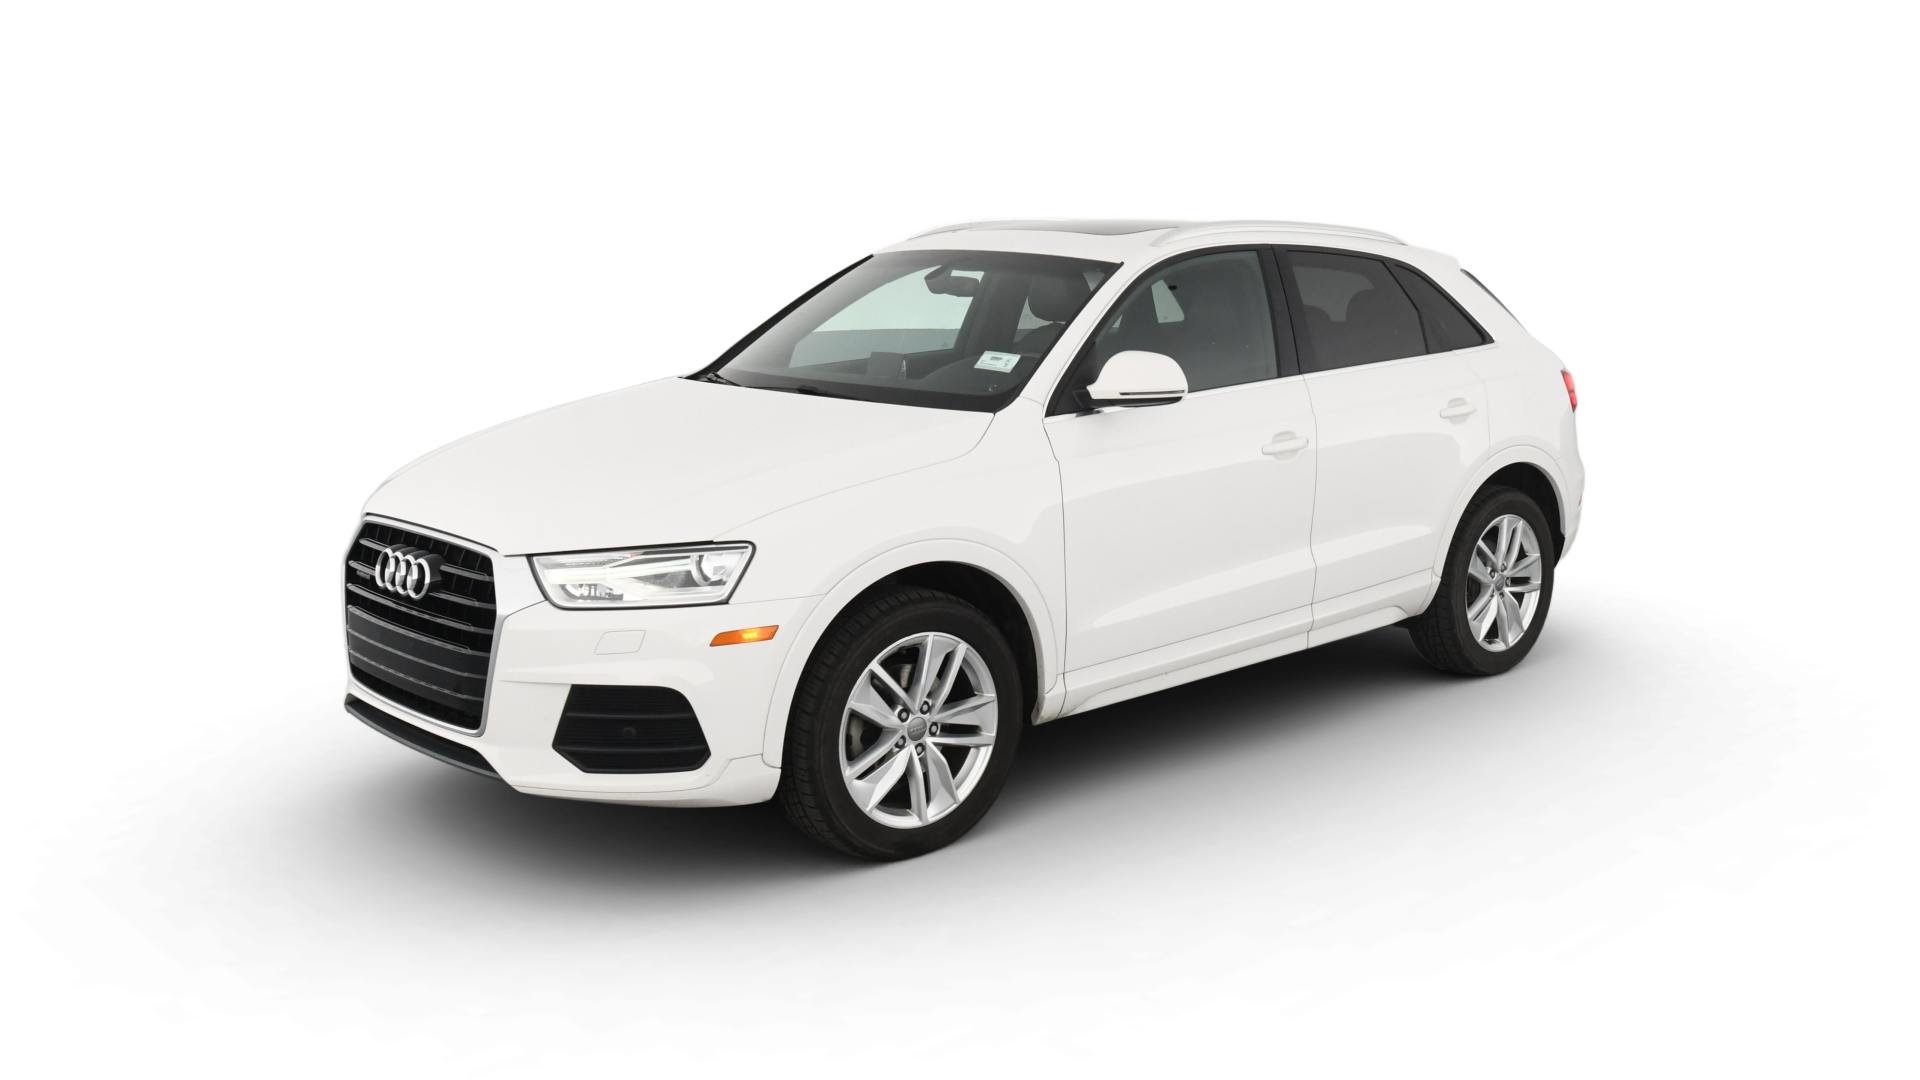 Audi Q3 model image.